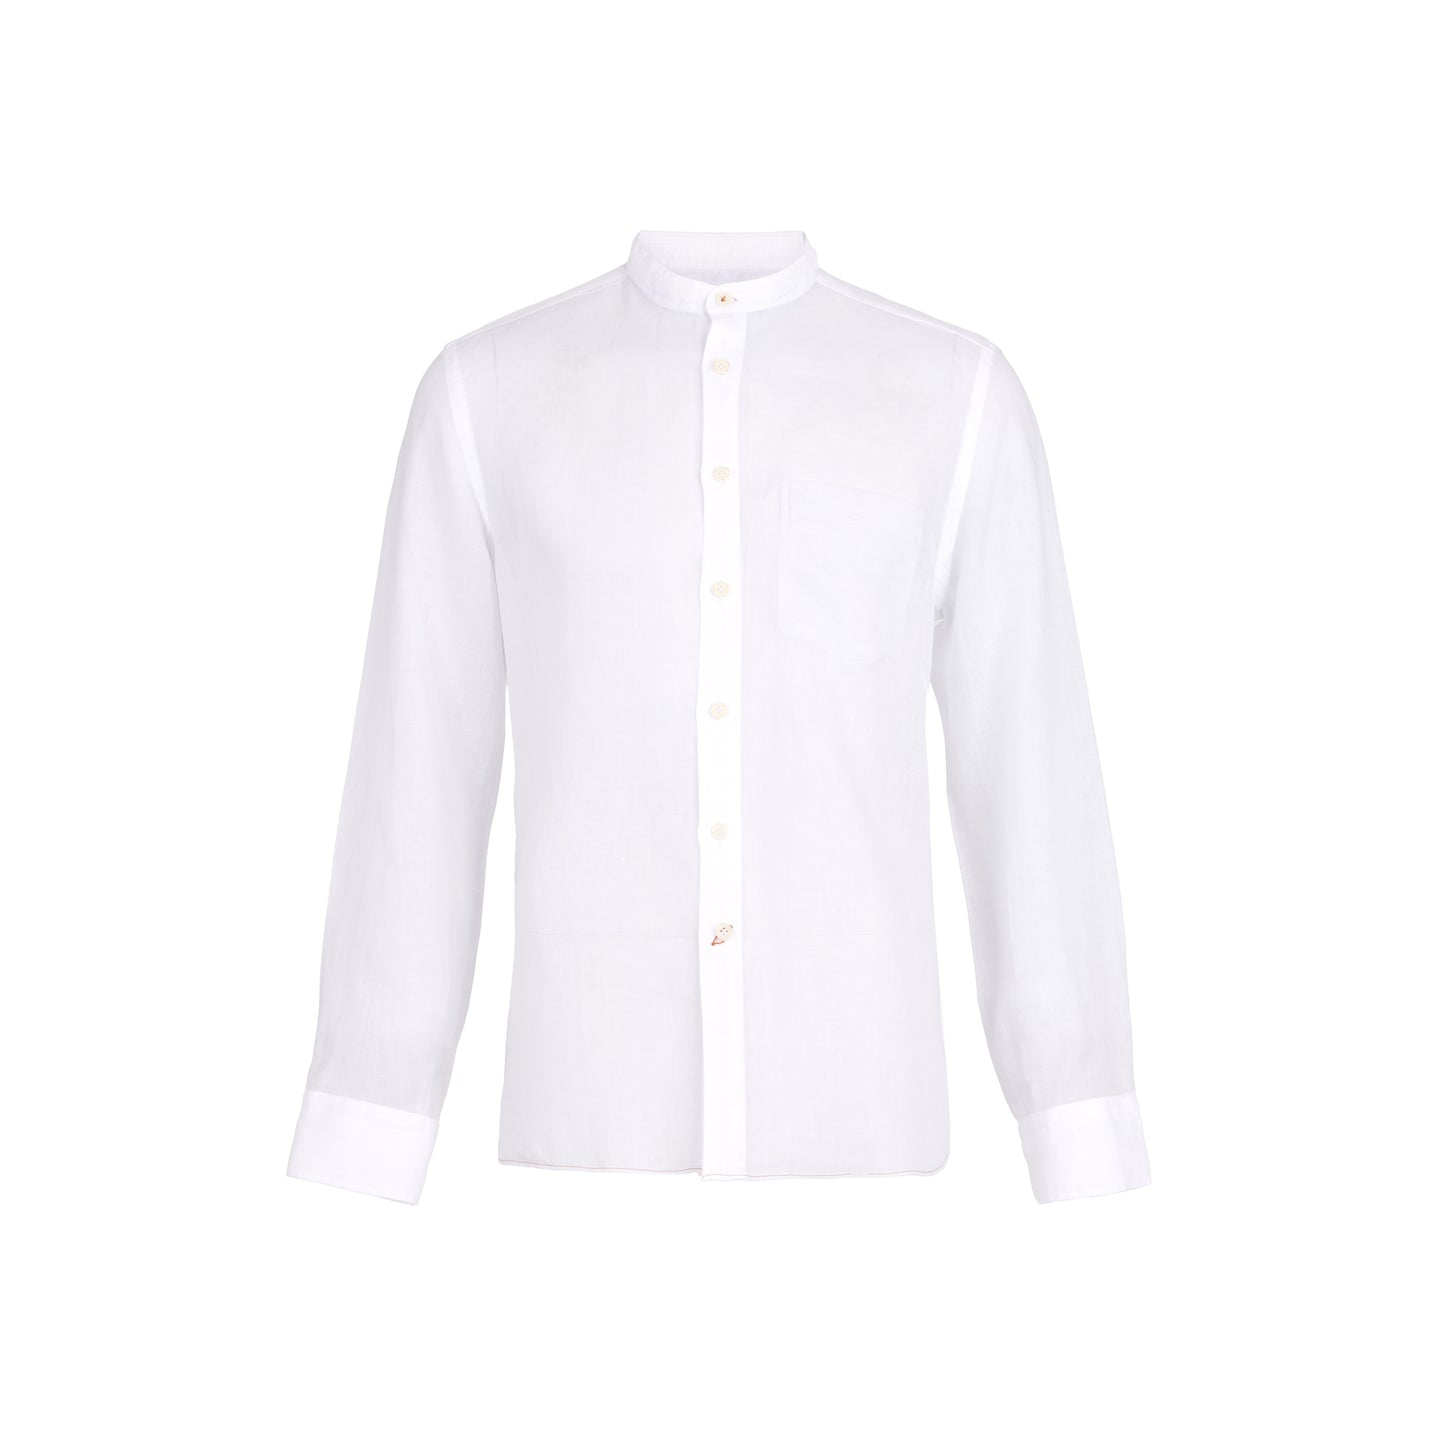 White Linen Band Collar Sport Shirt